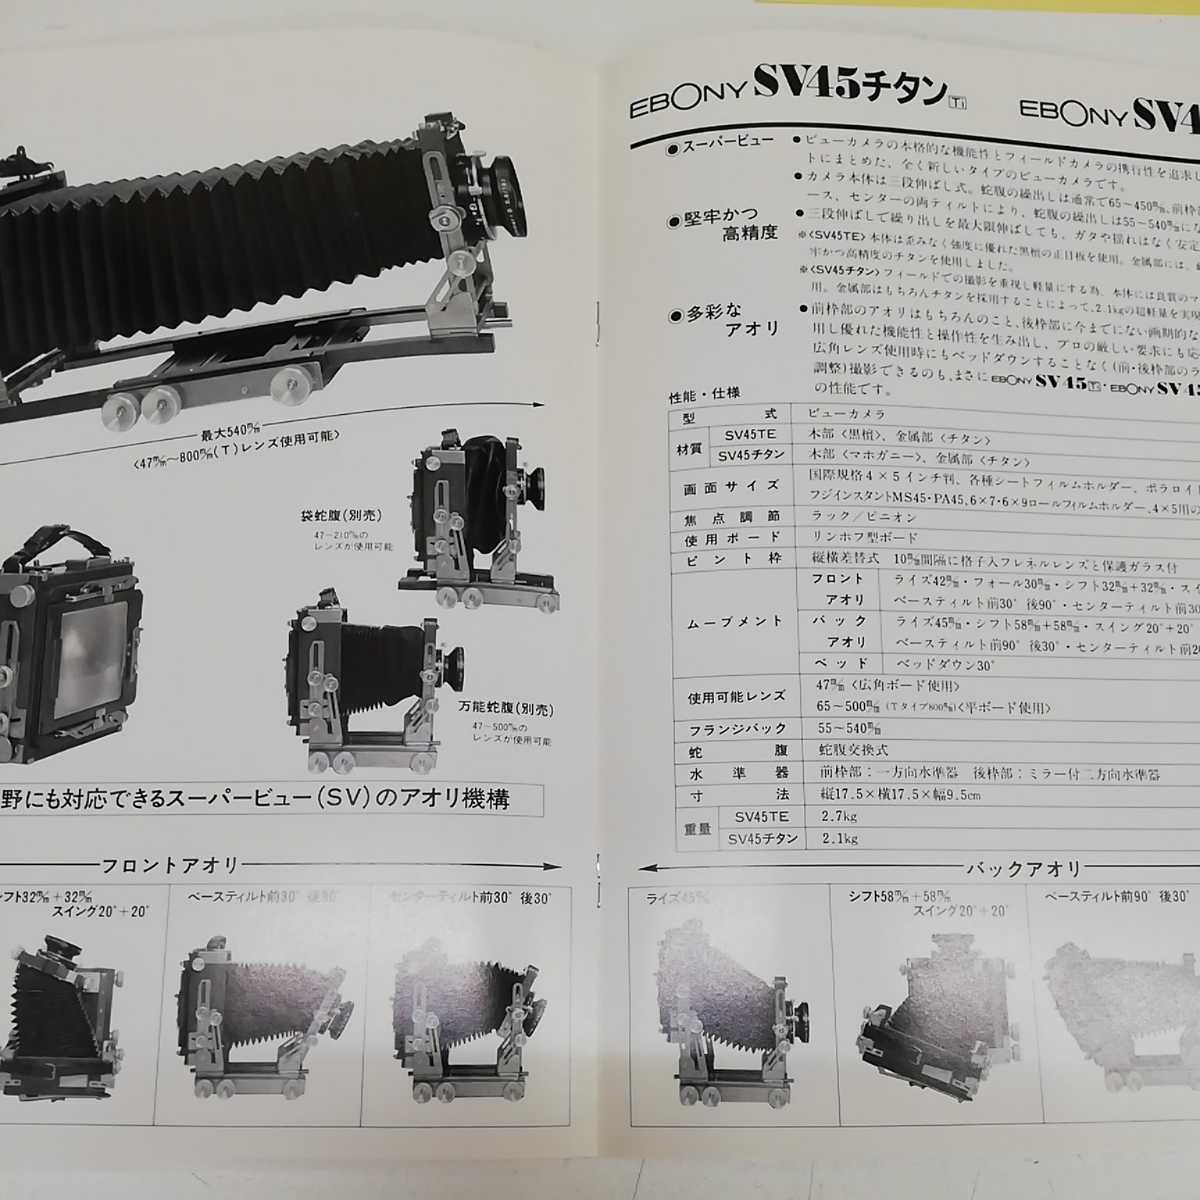 1-# EBONY catalog ebony view camera 1991 year SV45 titanium SV45TE camera wide-angle camera 